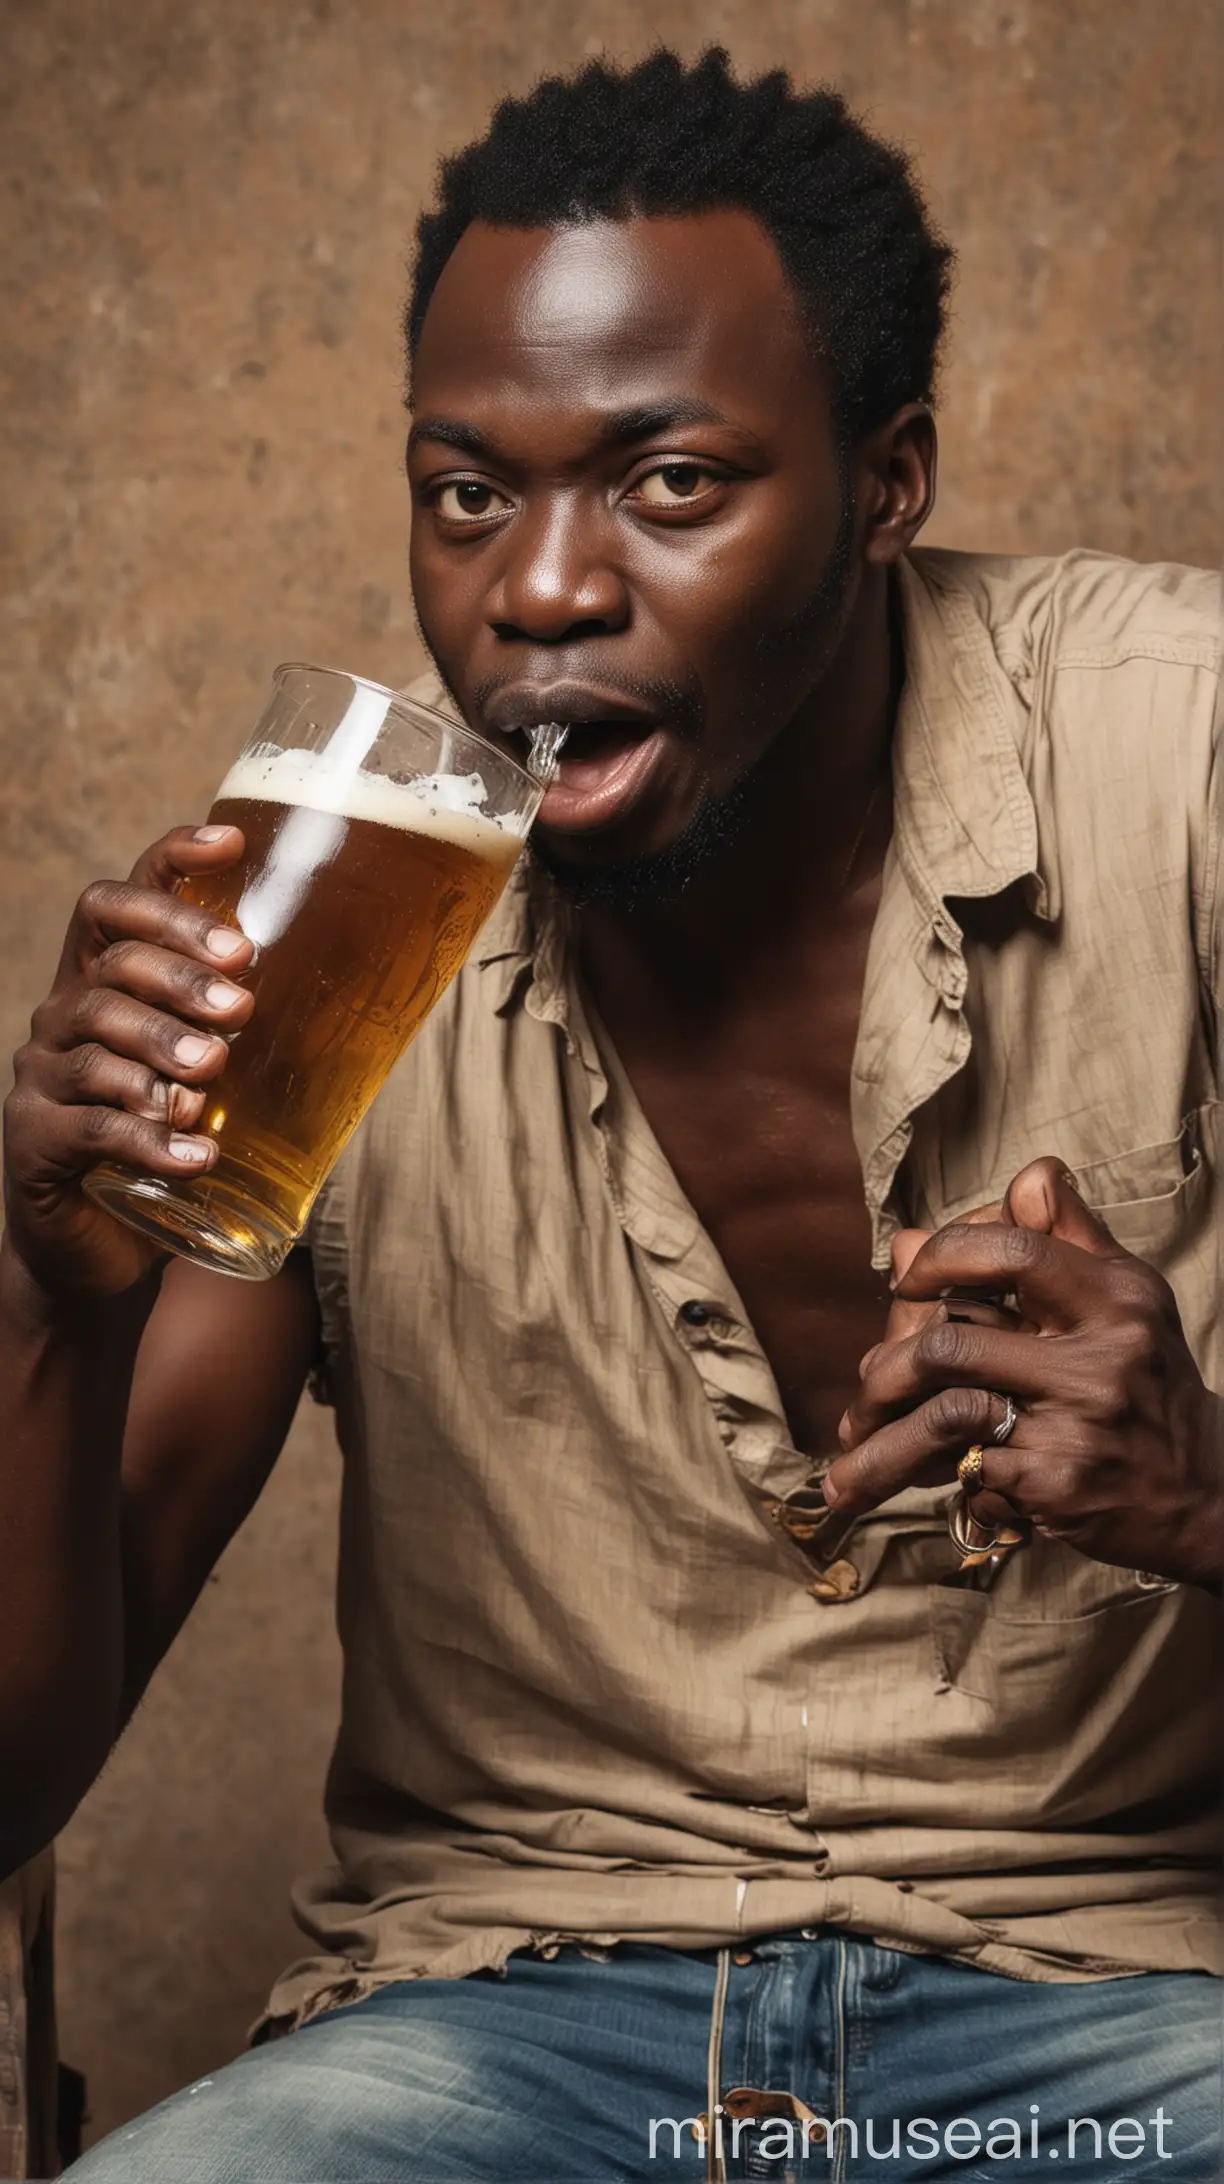 African Man Enjoying a Refreshing Beer